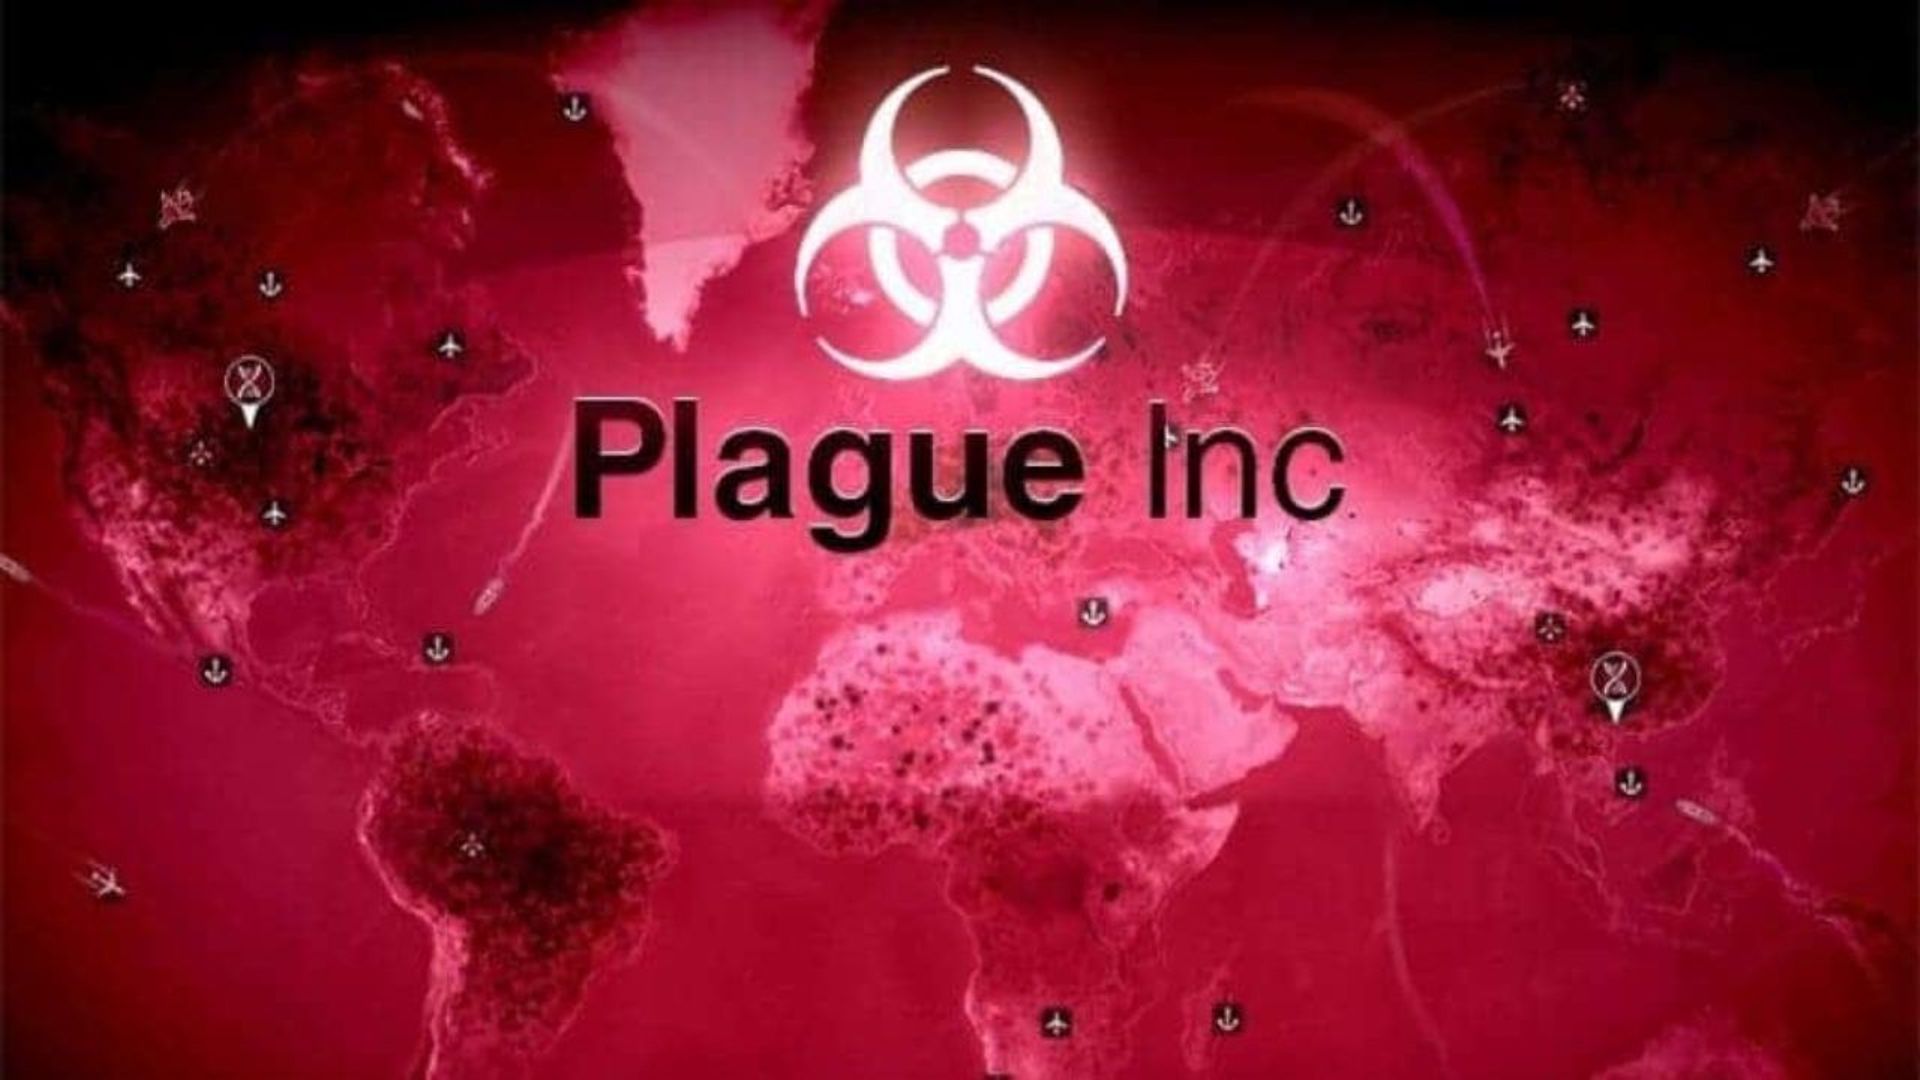 Le jeu Plague Inc censuré par la Chine